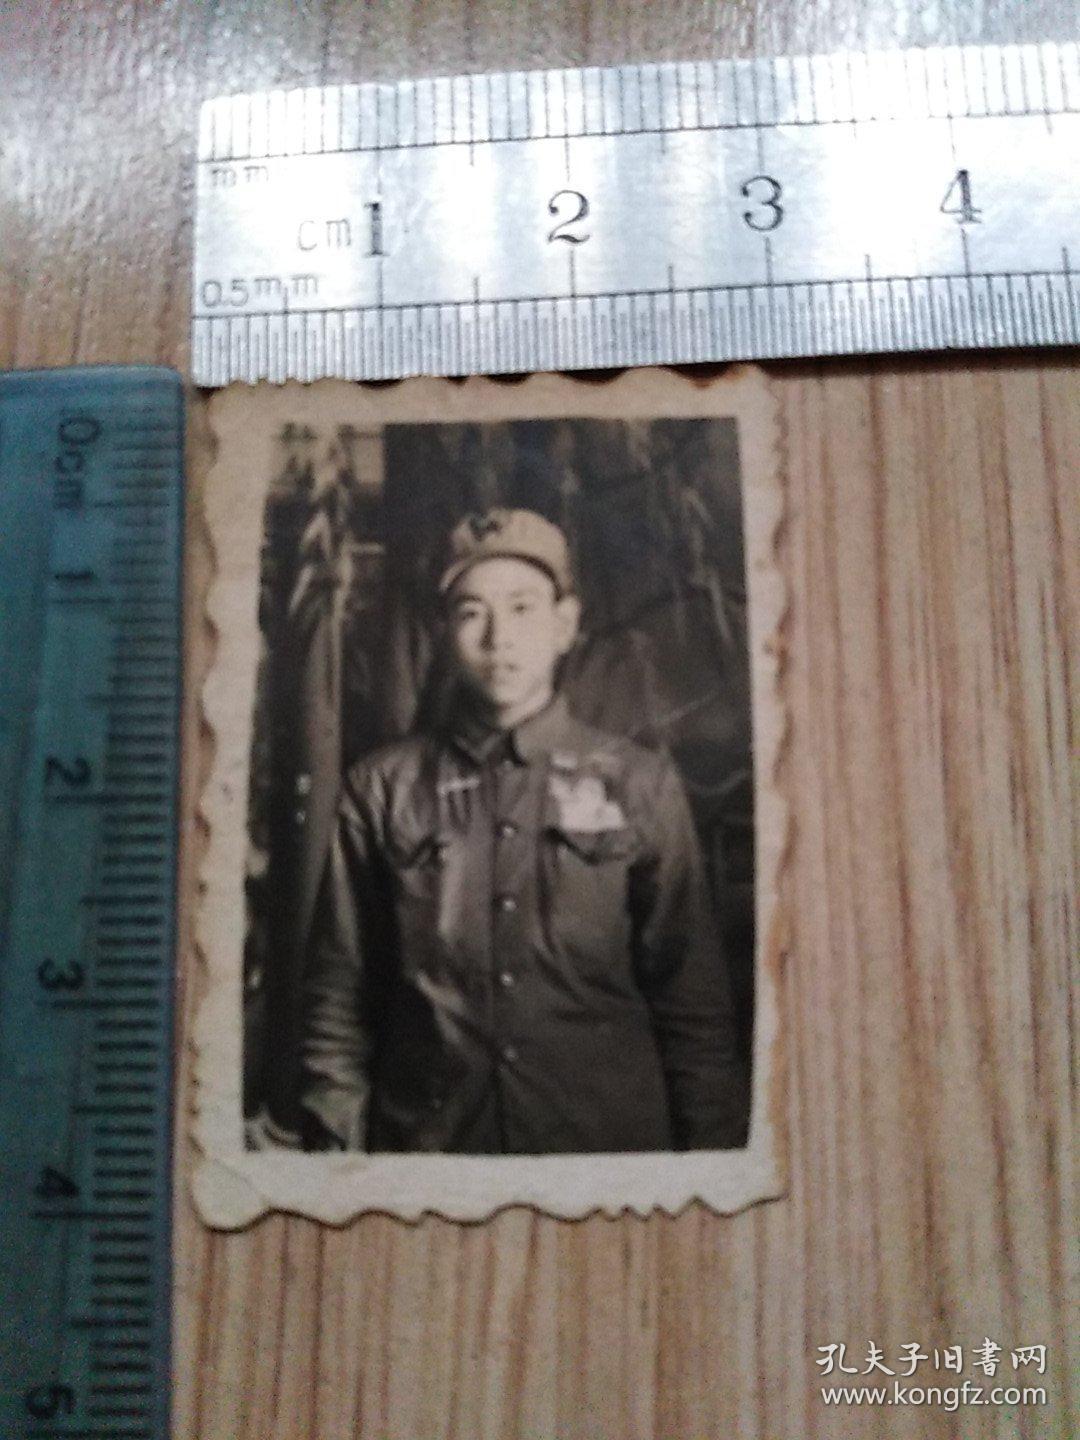 5、60年代老照片:一个带2枚军功章的军人留影  见书影及描述